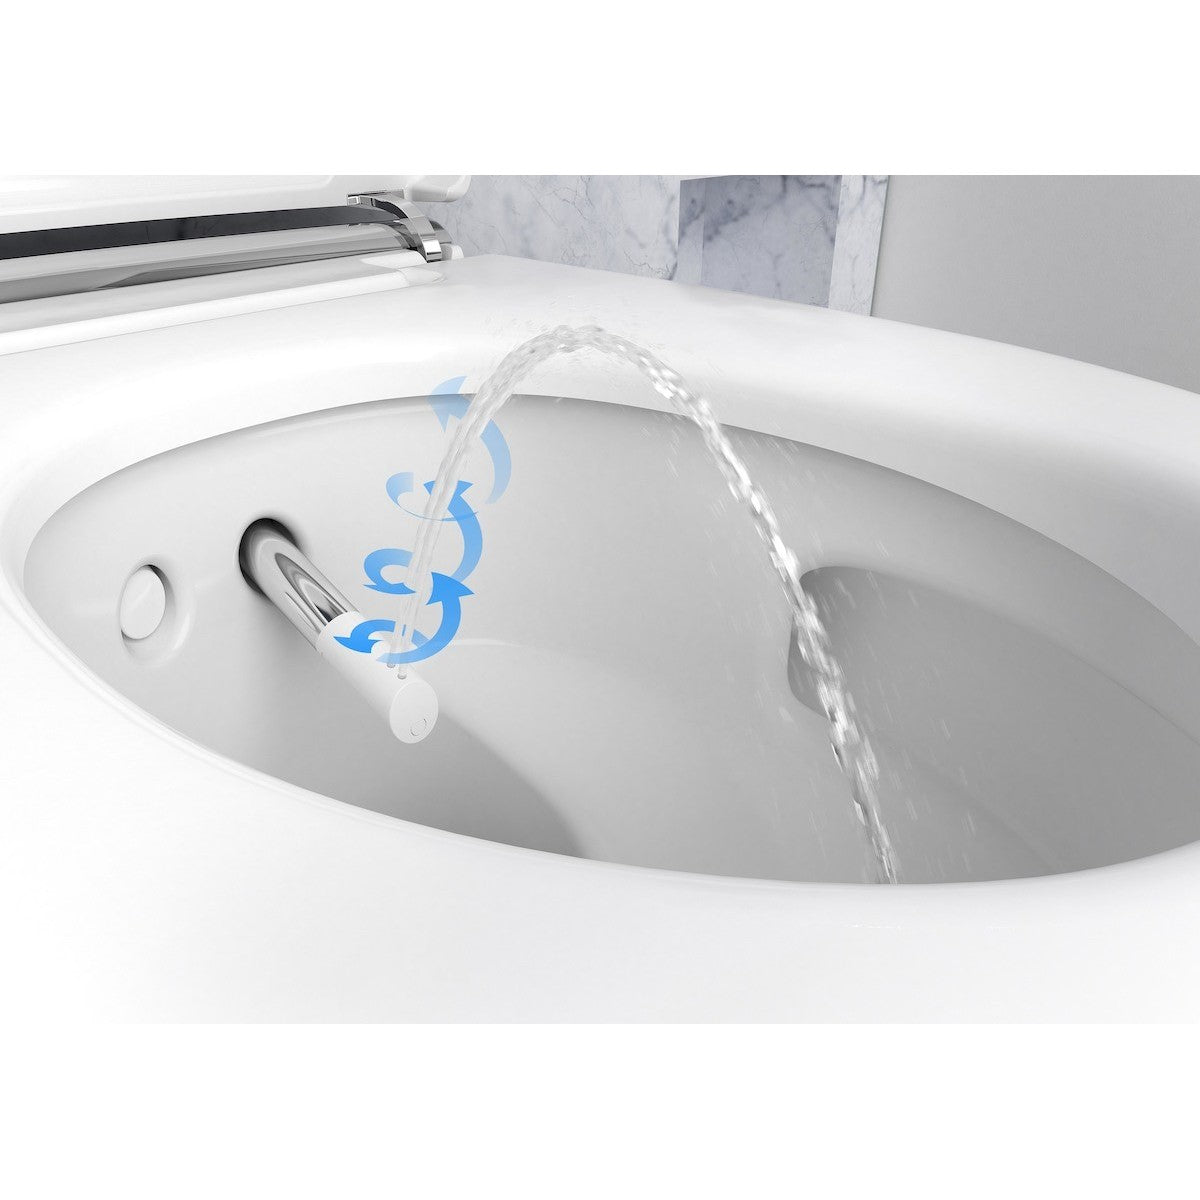 WC školjke 146.212.11.1 Geberit Aqua Clean Mera Comfort higijenska brezrobna viseča WC školjka (146.213.11.1) | KOPALNICA-ONLINE.SI